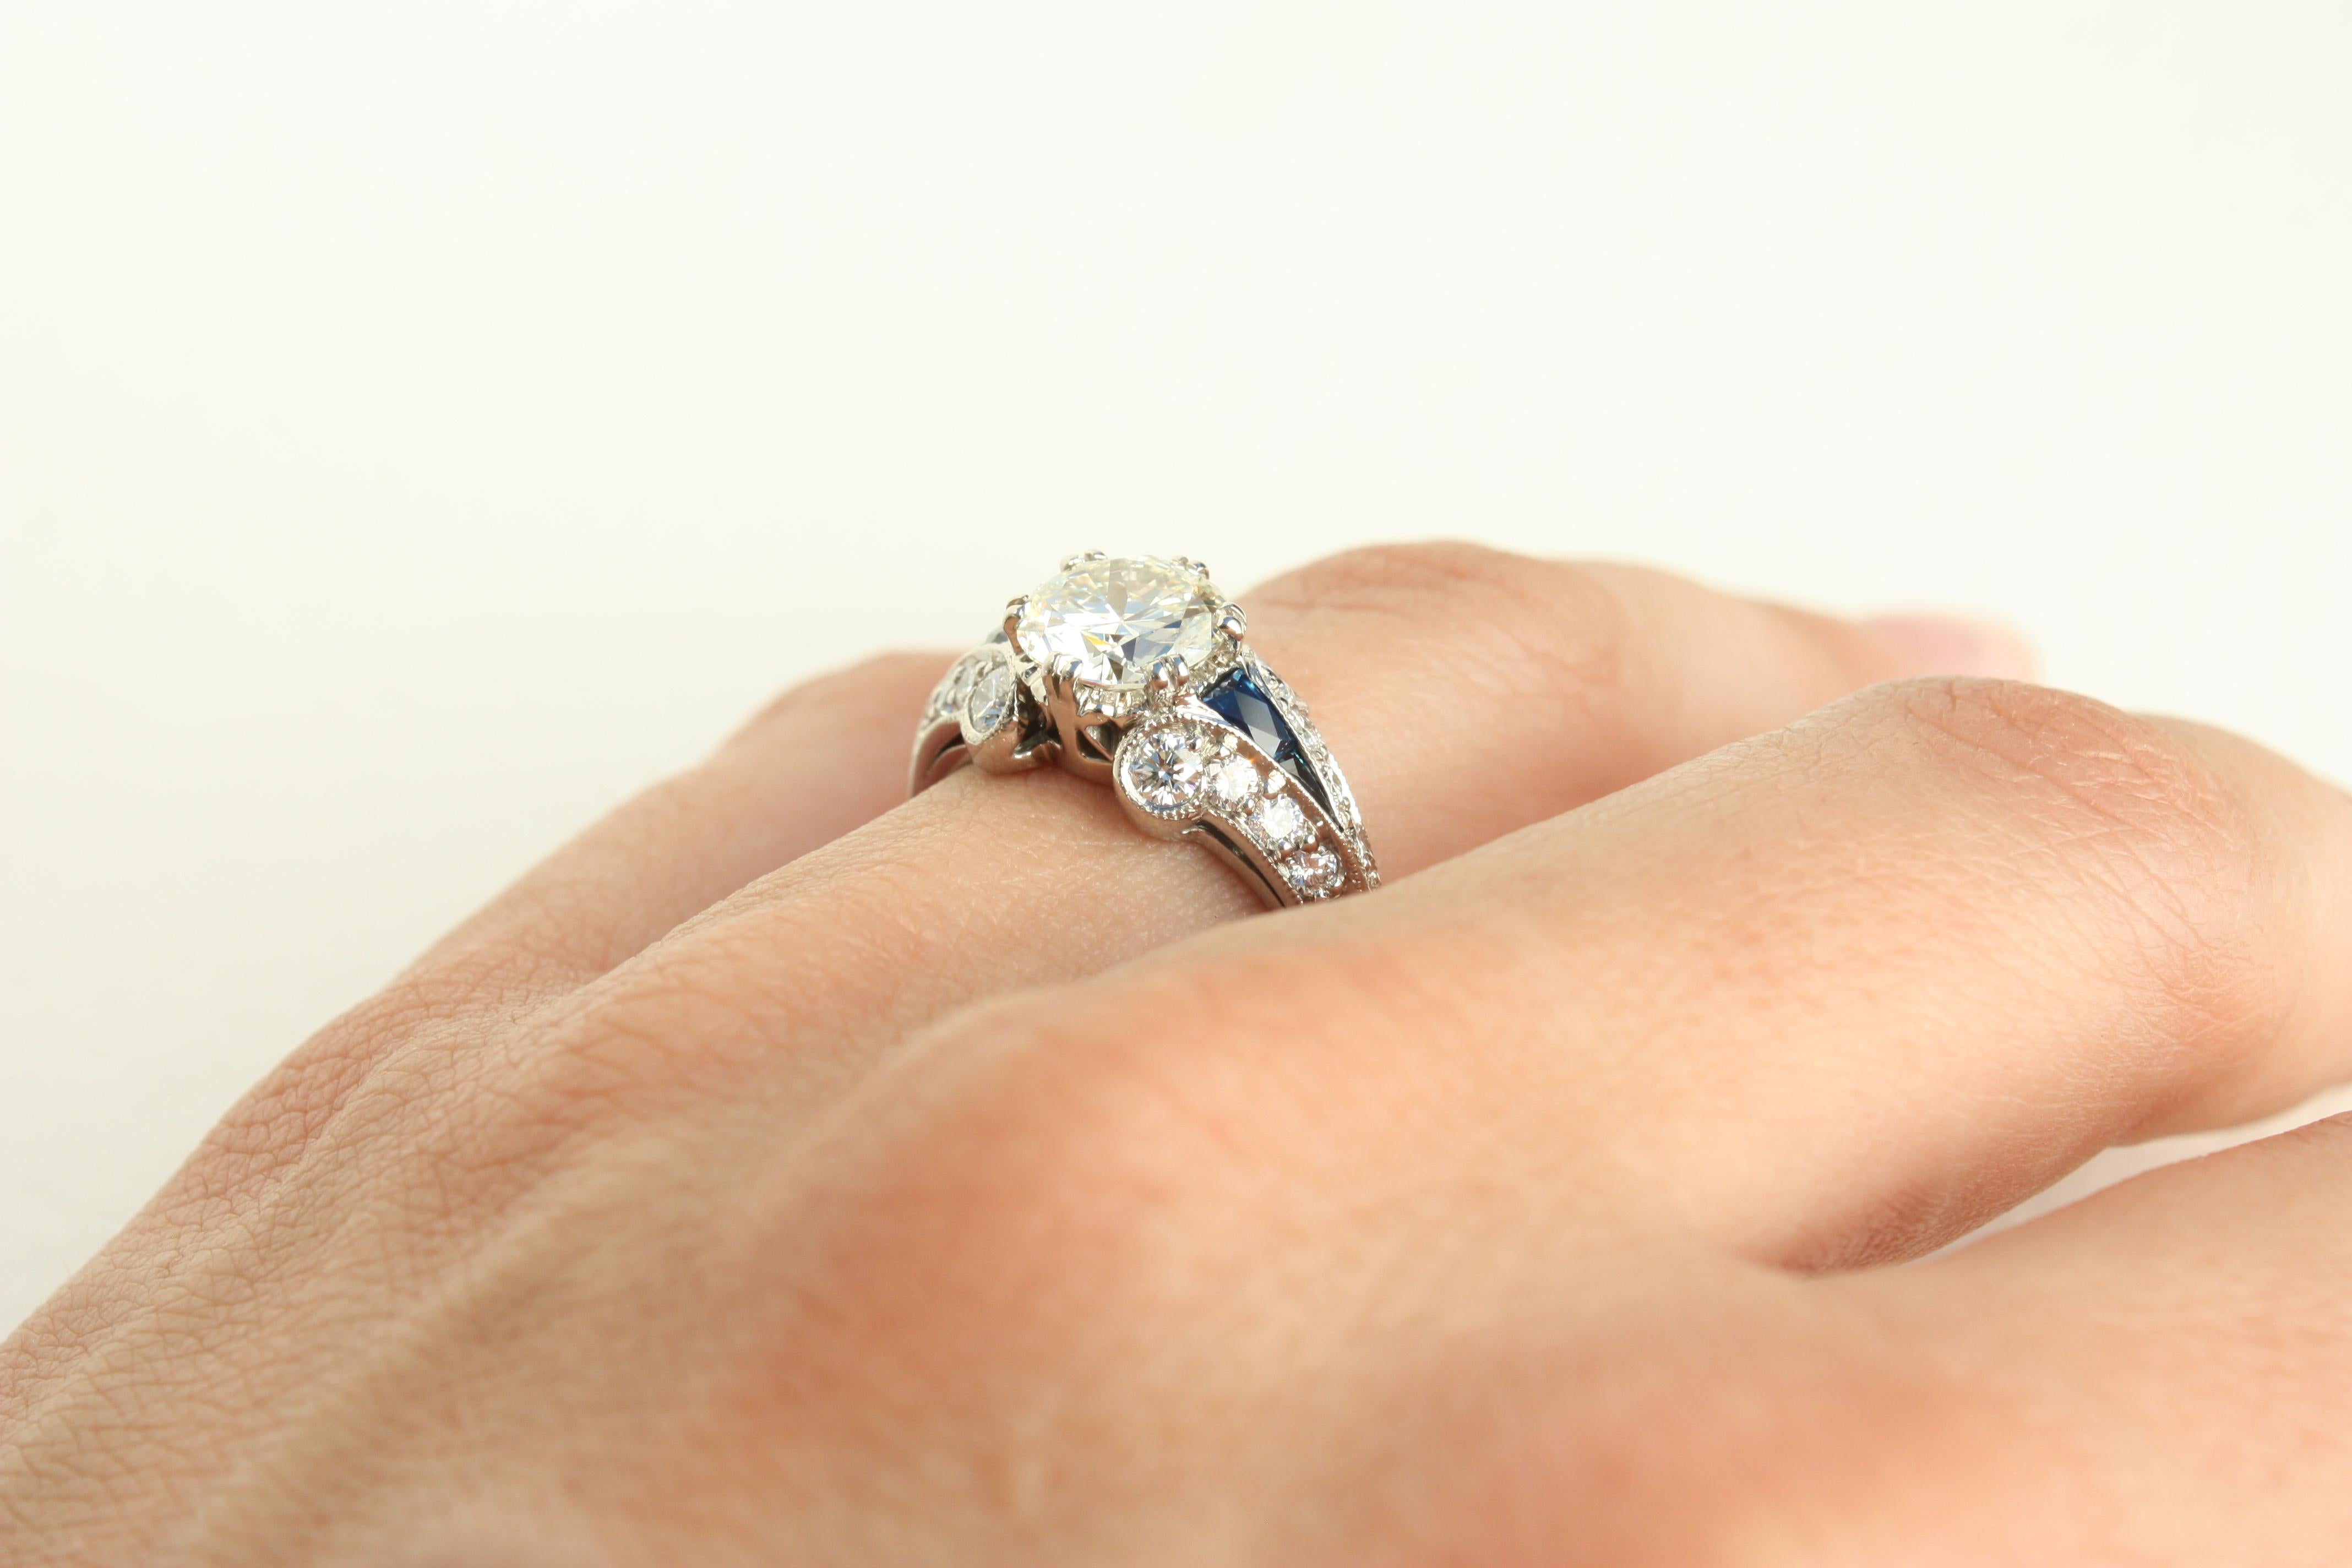 1.7 Carat Total Diamond & Sapphire Art Deco Palladium/Platinum Engagement Ring For Sale 1